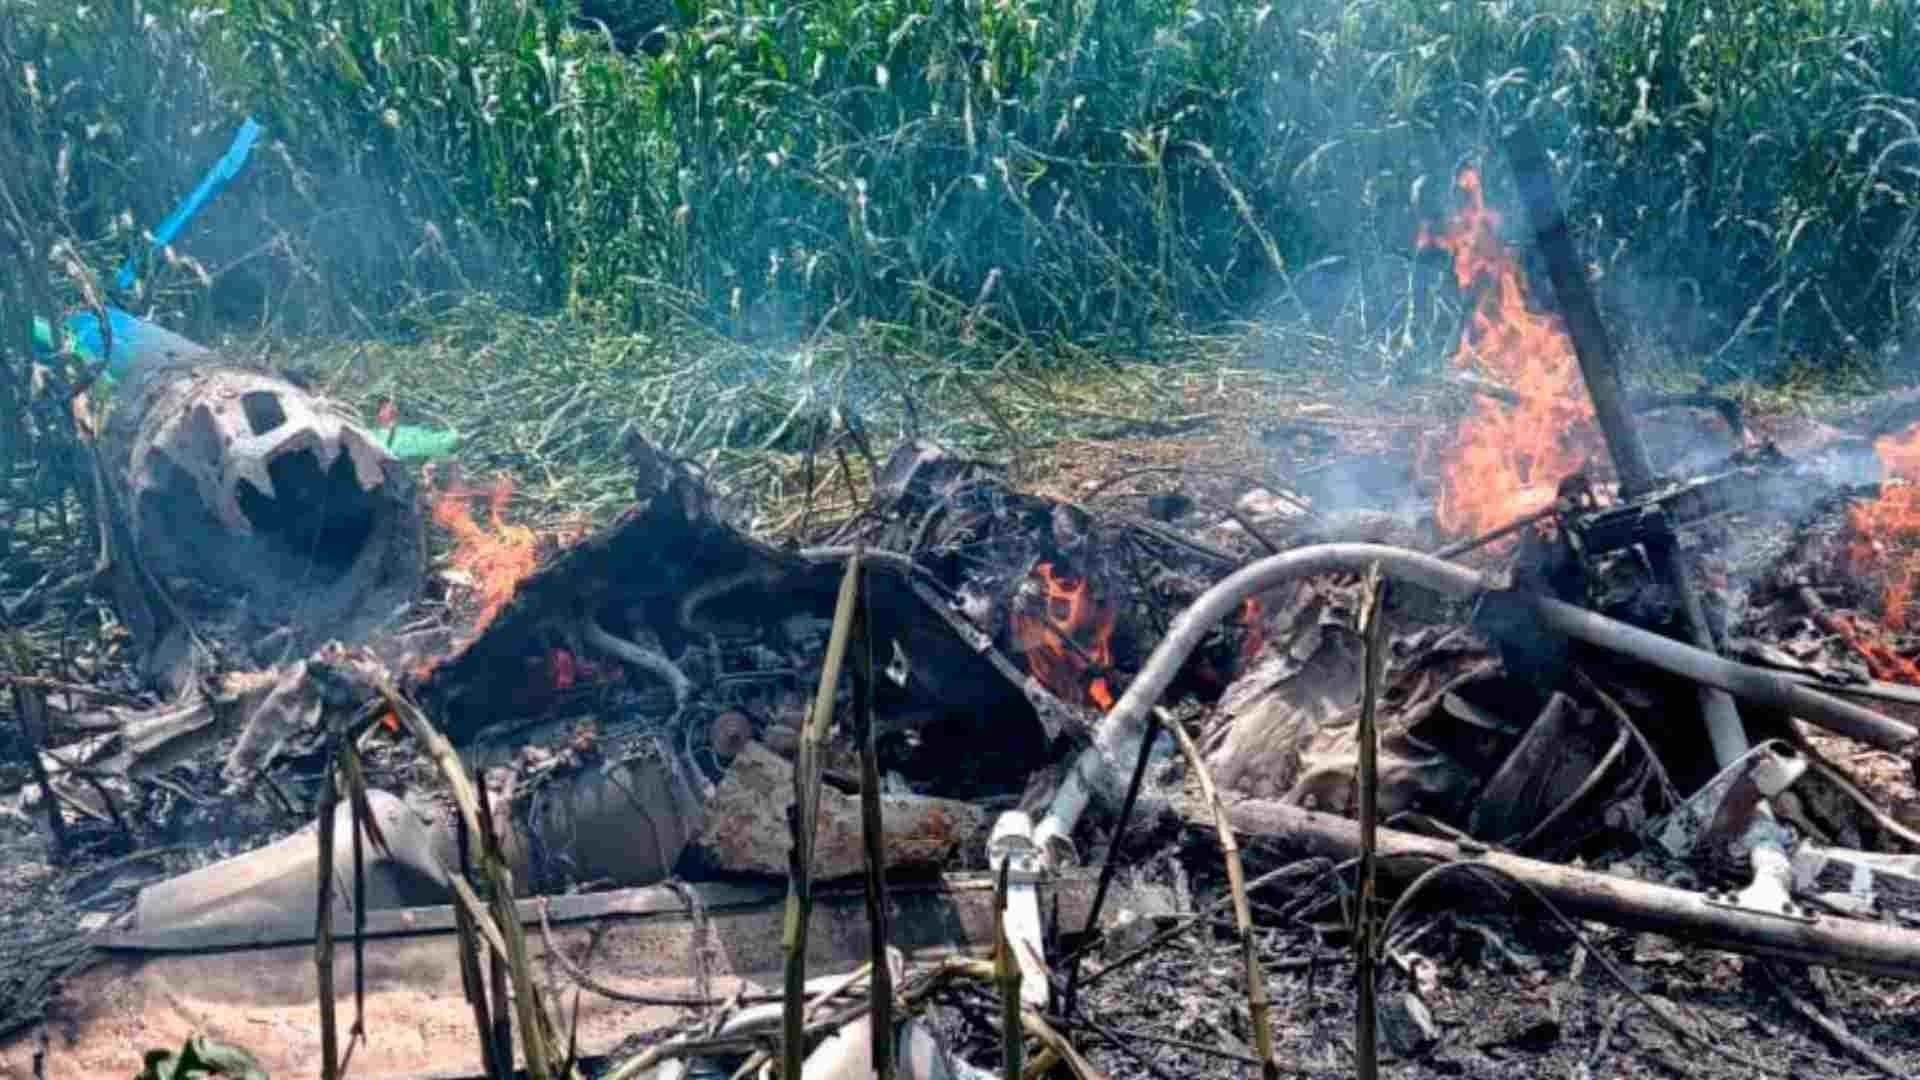 Se Desploma Helicóptero en Tuxpan, Jalisco; Hay 3 Muertos